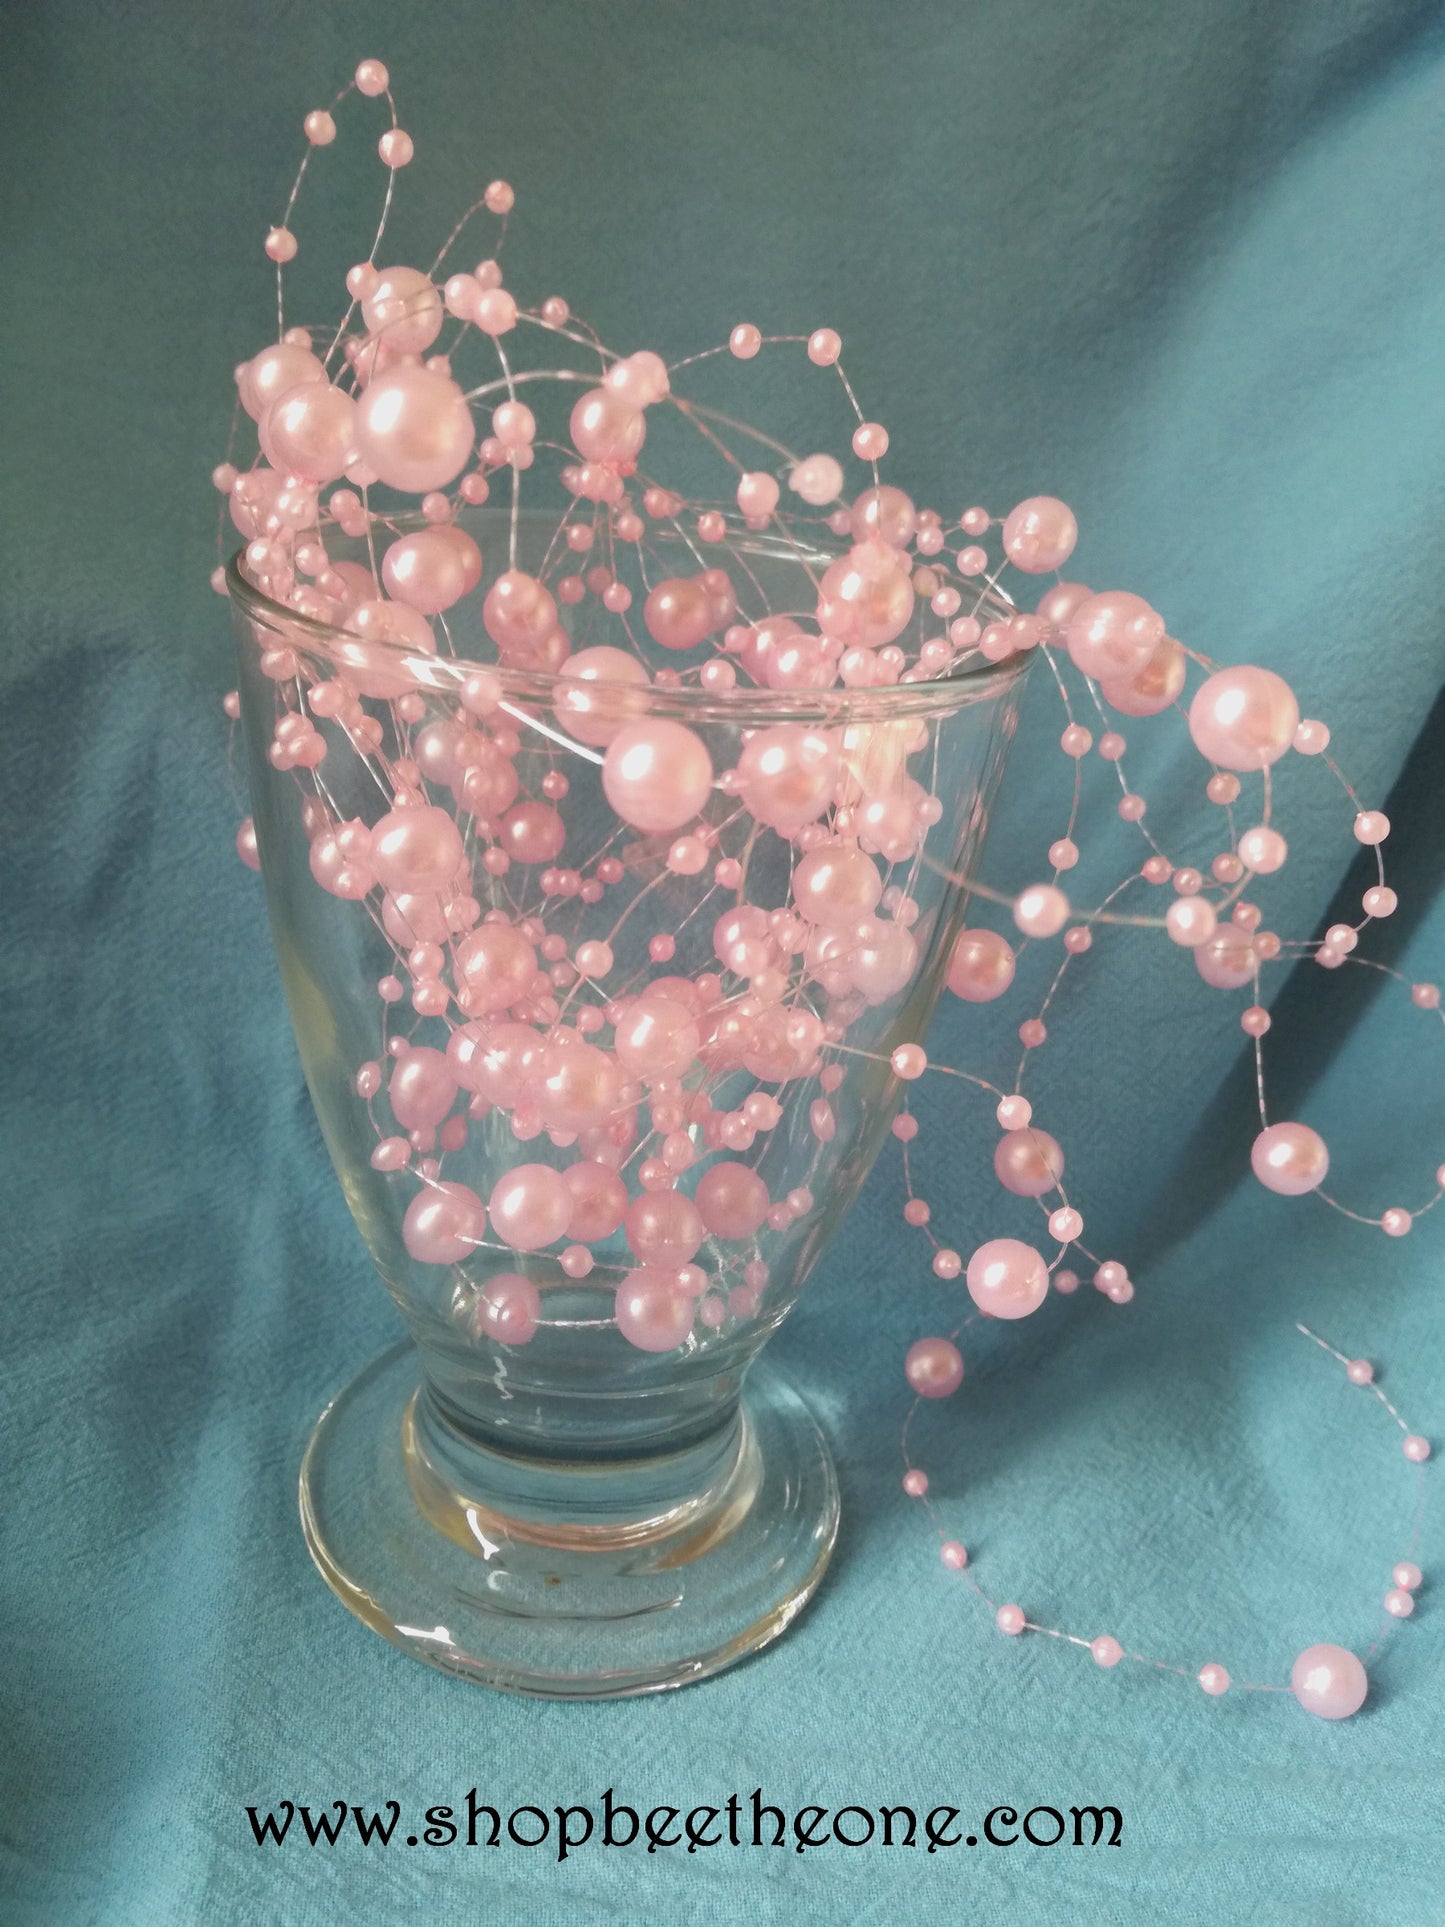 Guirlande de perles synthétiques - vendu au mètre - 3 coloris disponibles